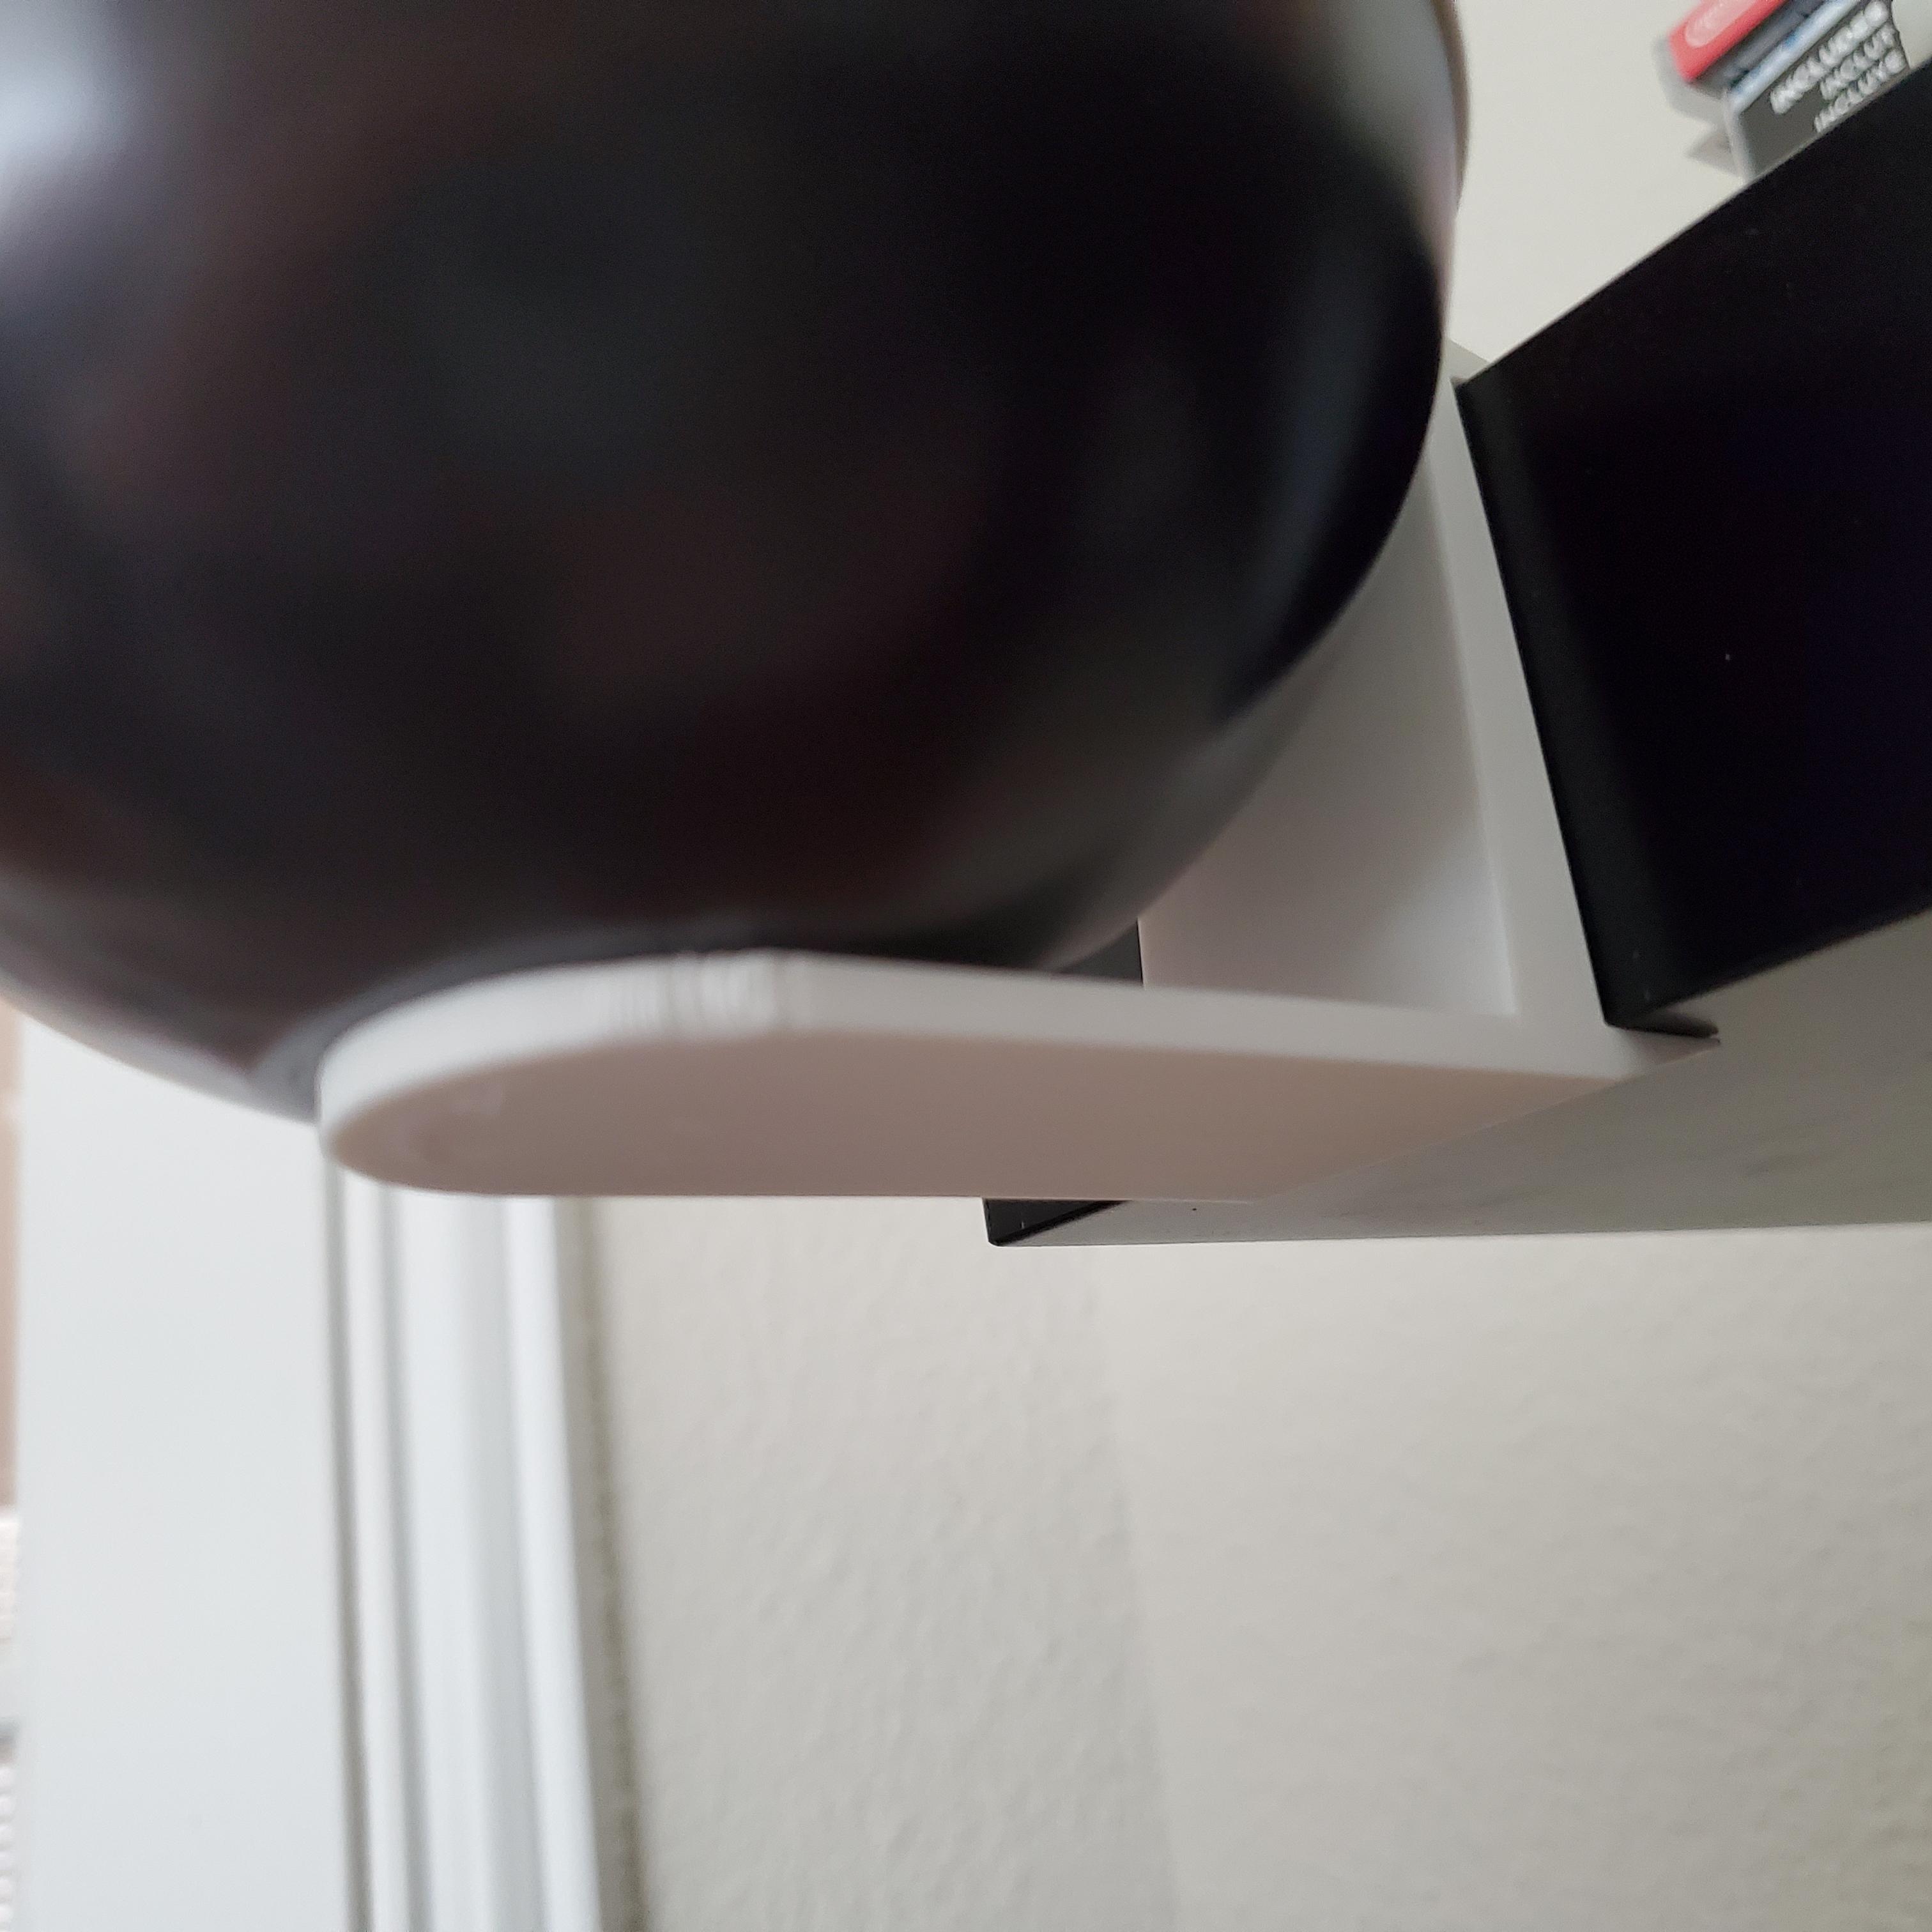 Pokeball Tin shelf for floating Ikea shelf 3d model